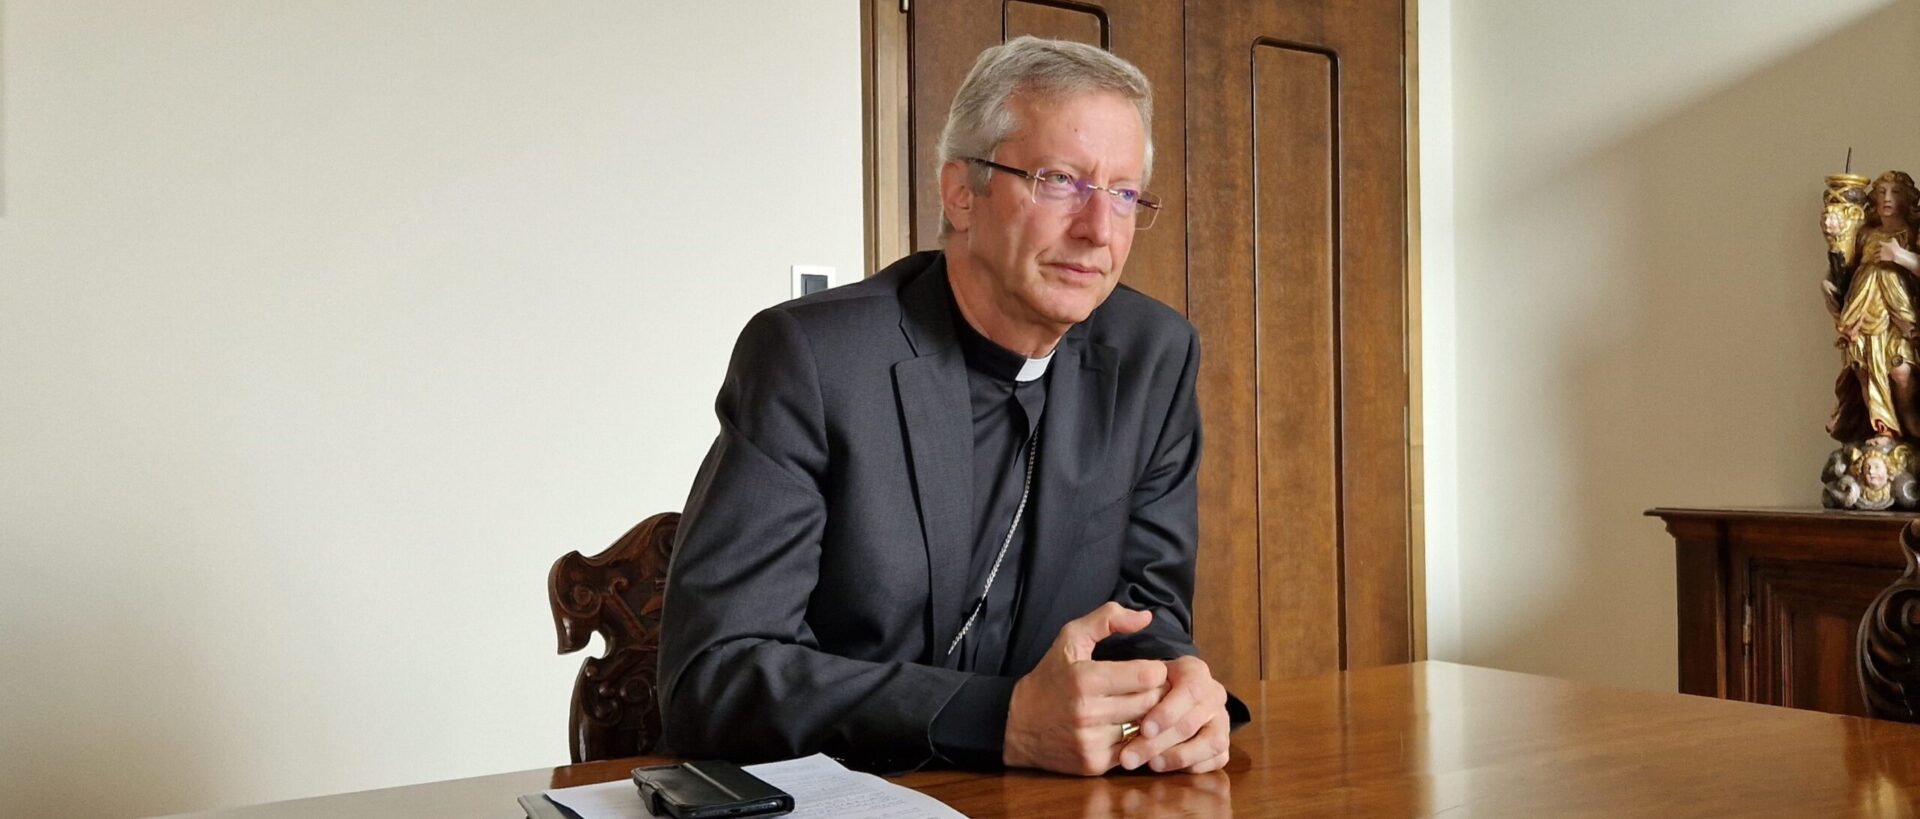 Mgr Alain de Raemy, administrateur apostolique du diocèse de Lugano, appelle les personnes à avoir le courage de parler des abus | © catt.ch